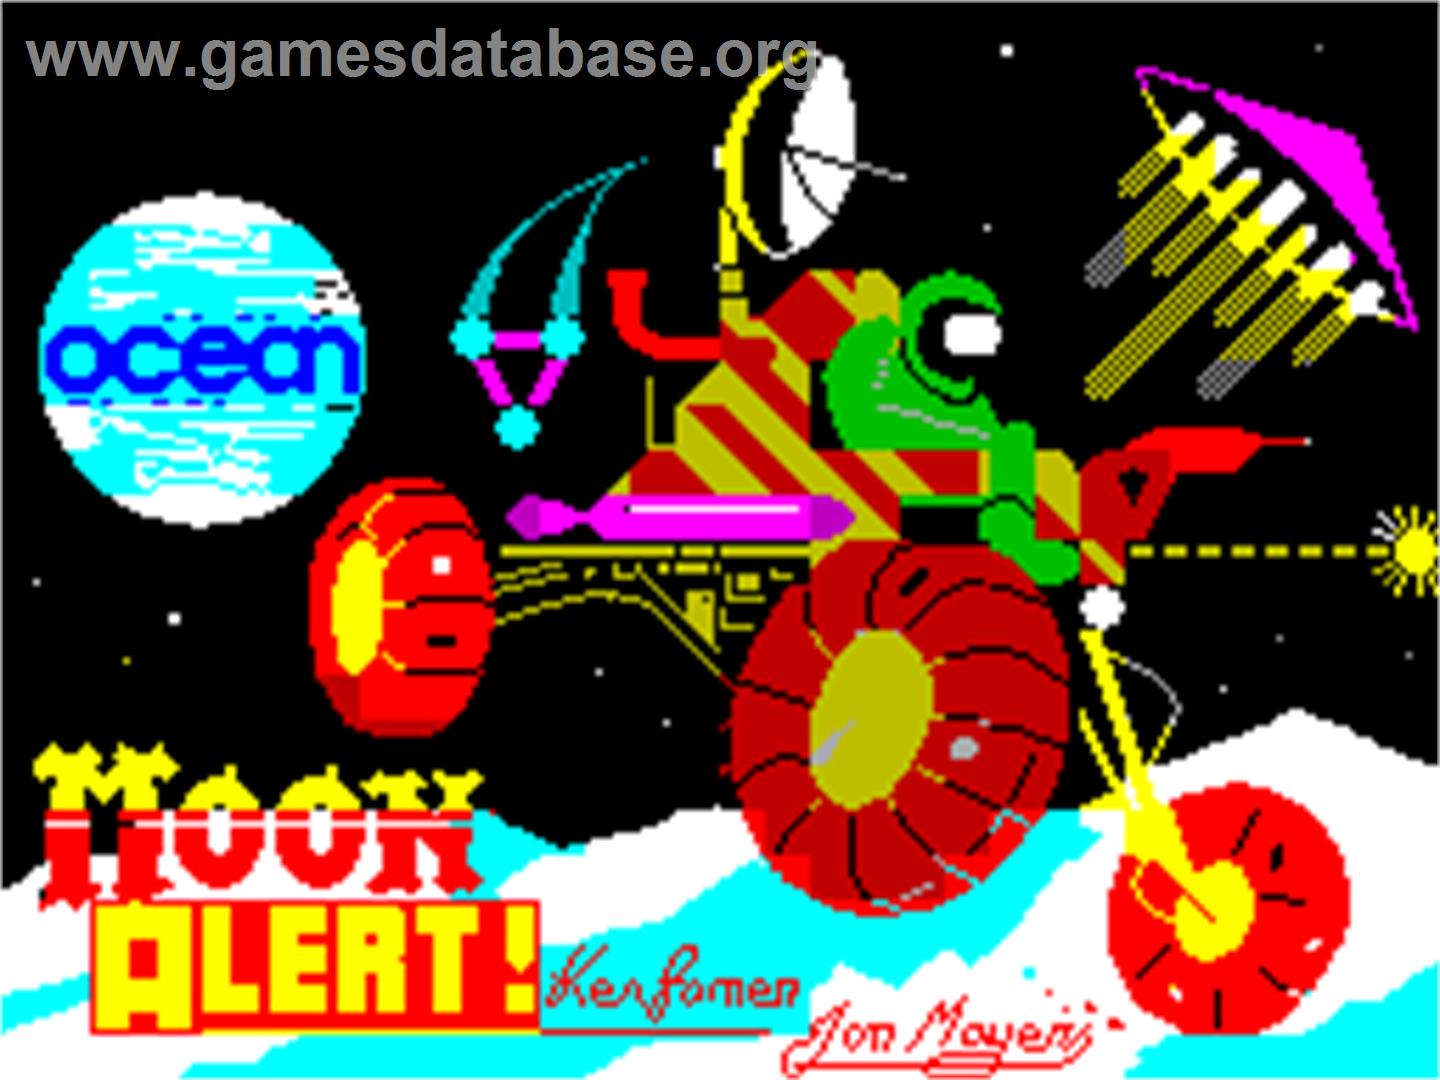 Moon Alert - Sinclair ZX Spectrum - Artwork - Title Screen